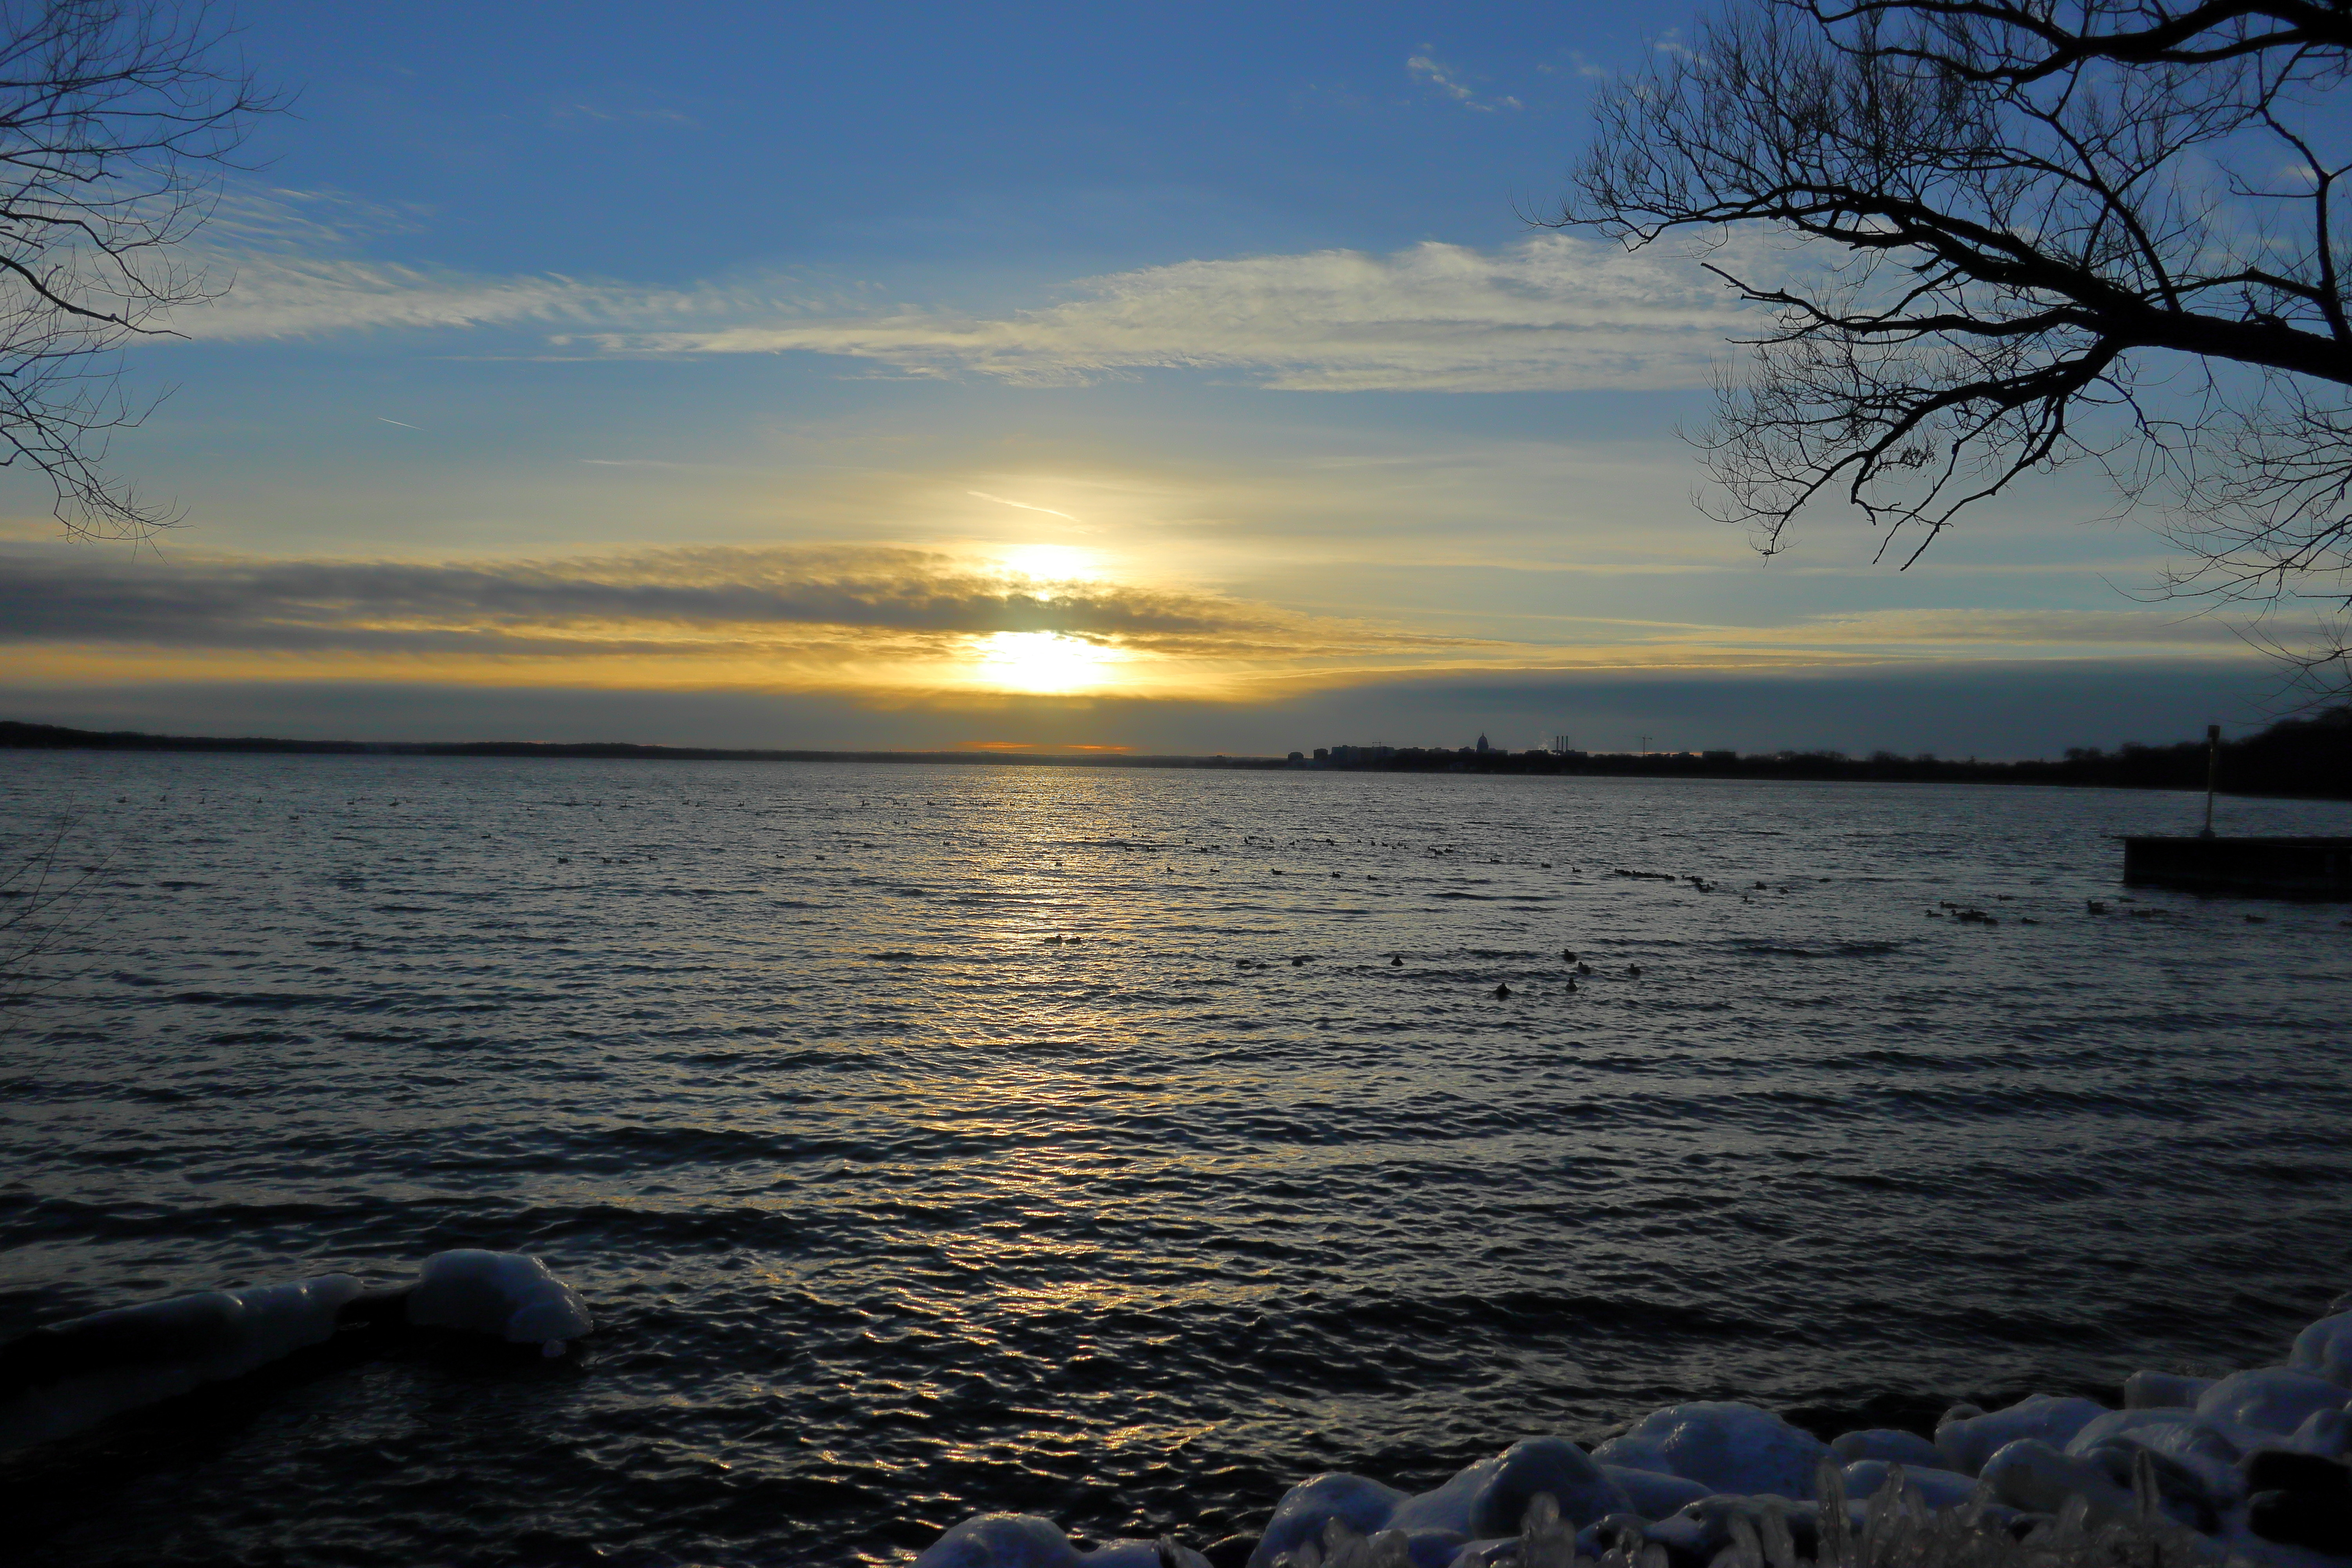 Bright Sunset over Lake Mendota image - Free stock photo - Public ...